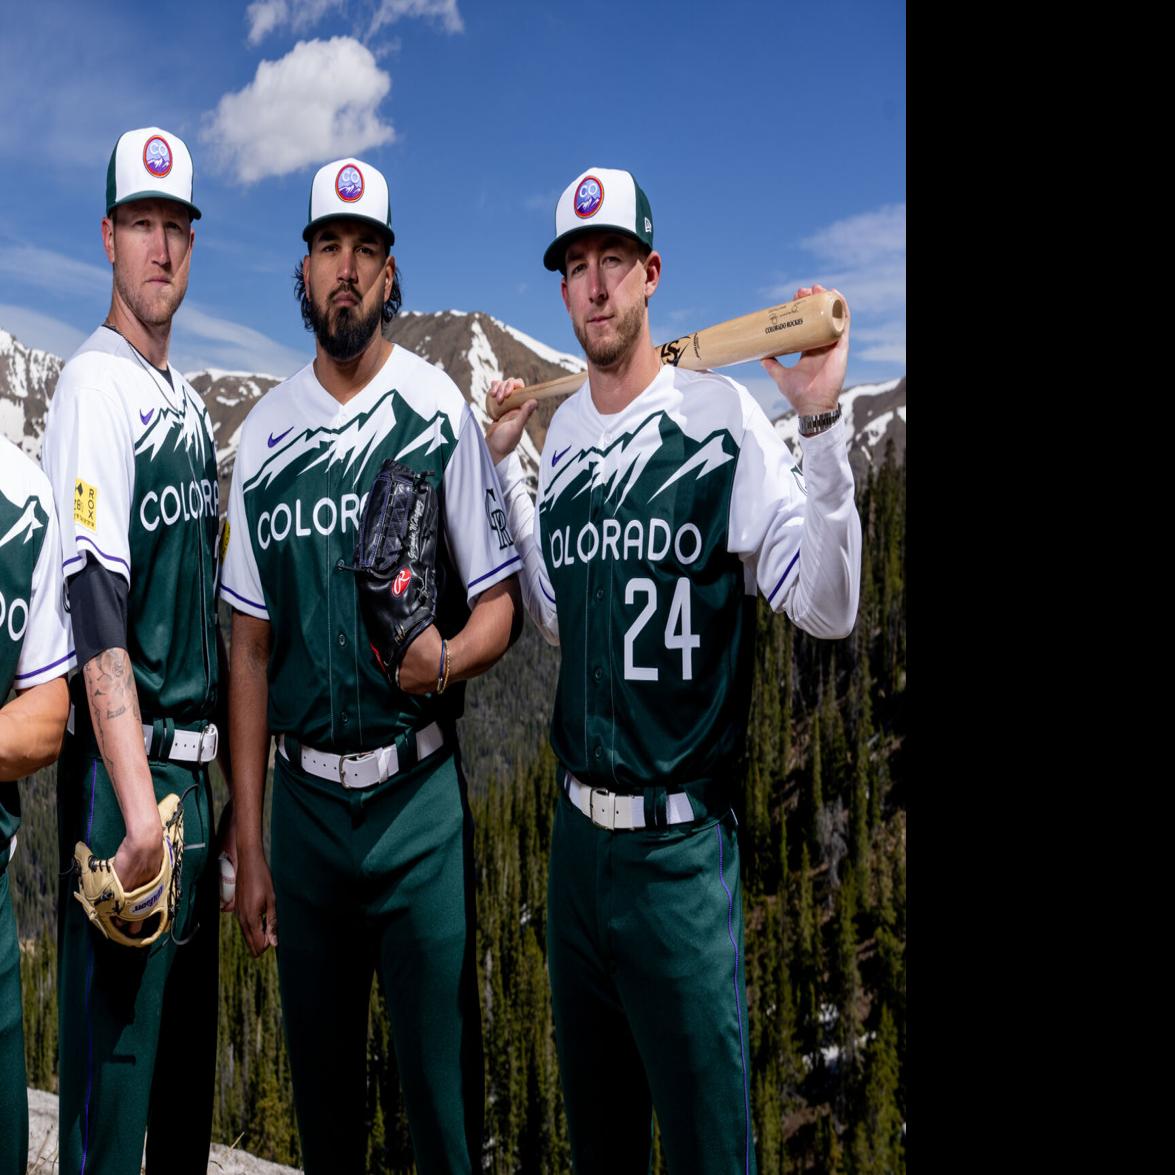 Colorado Rockies 2012 Uniforms, Uniforms to be worn in the …